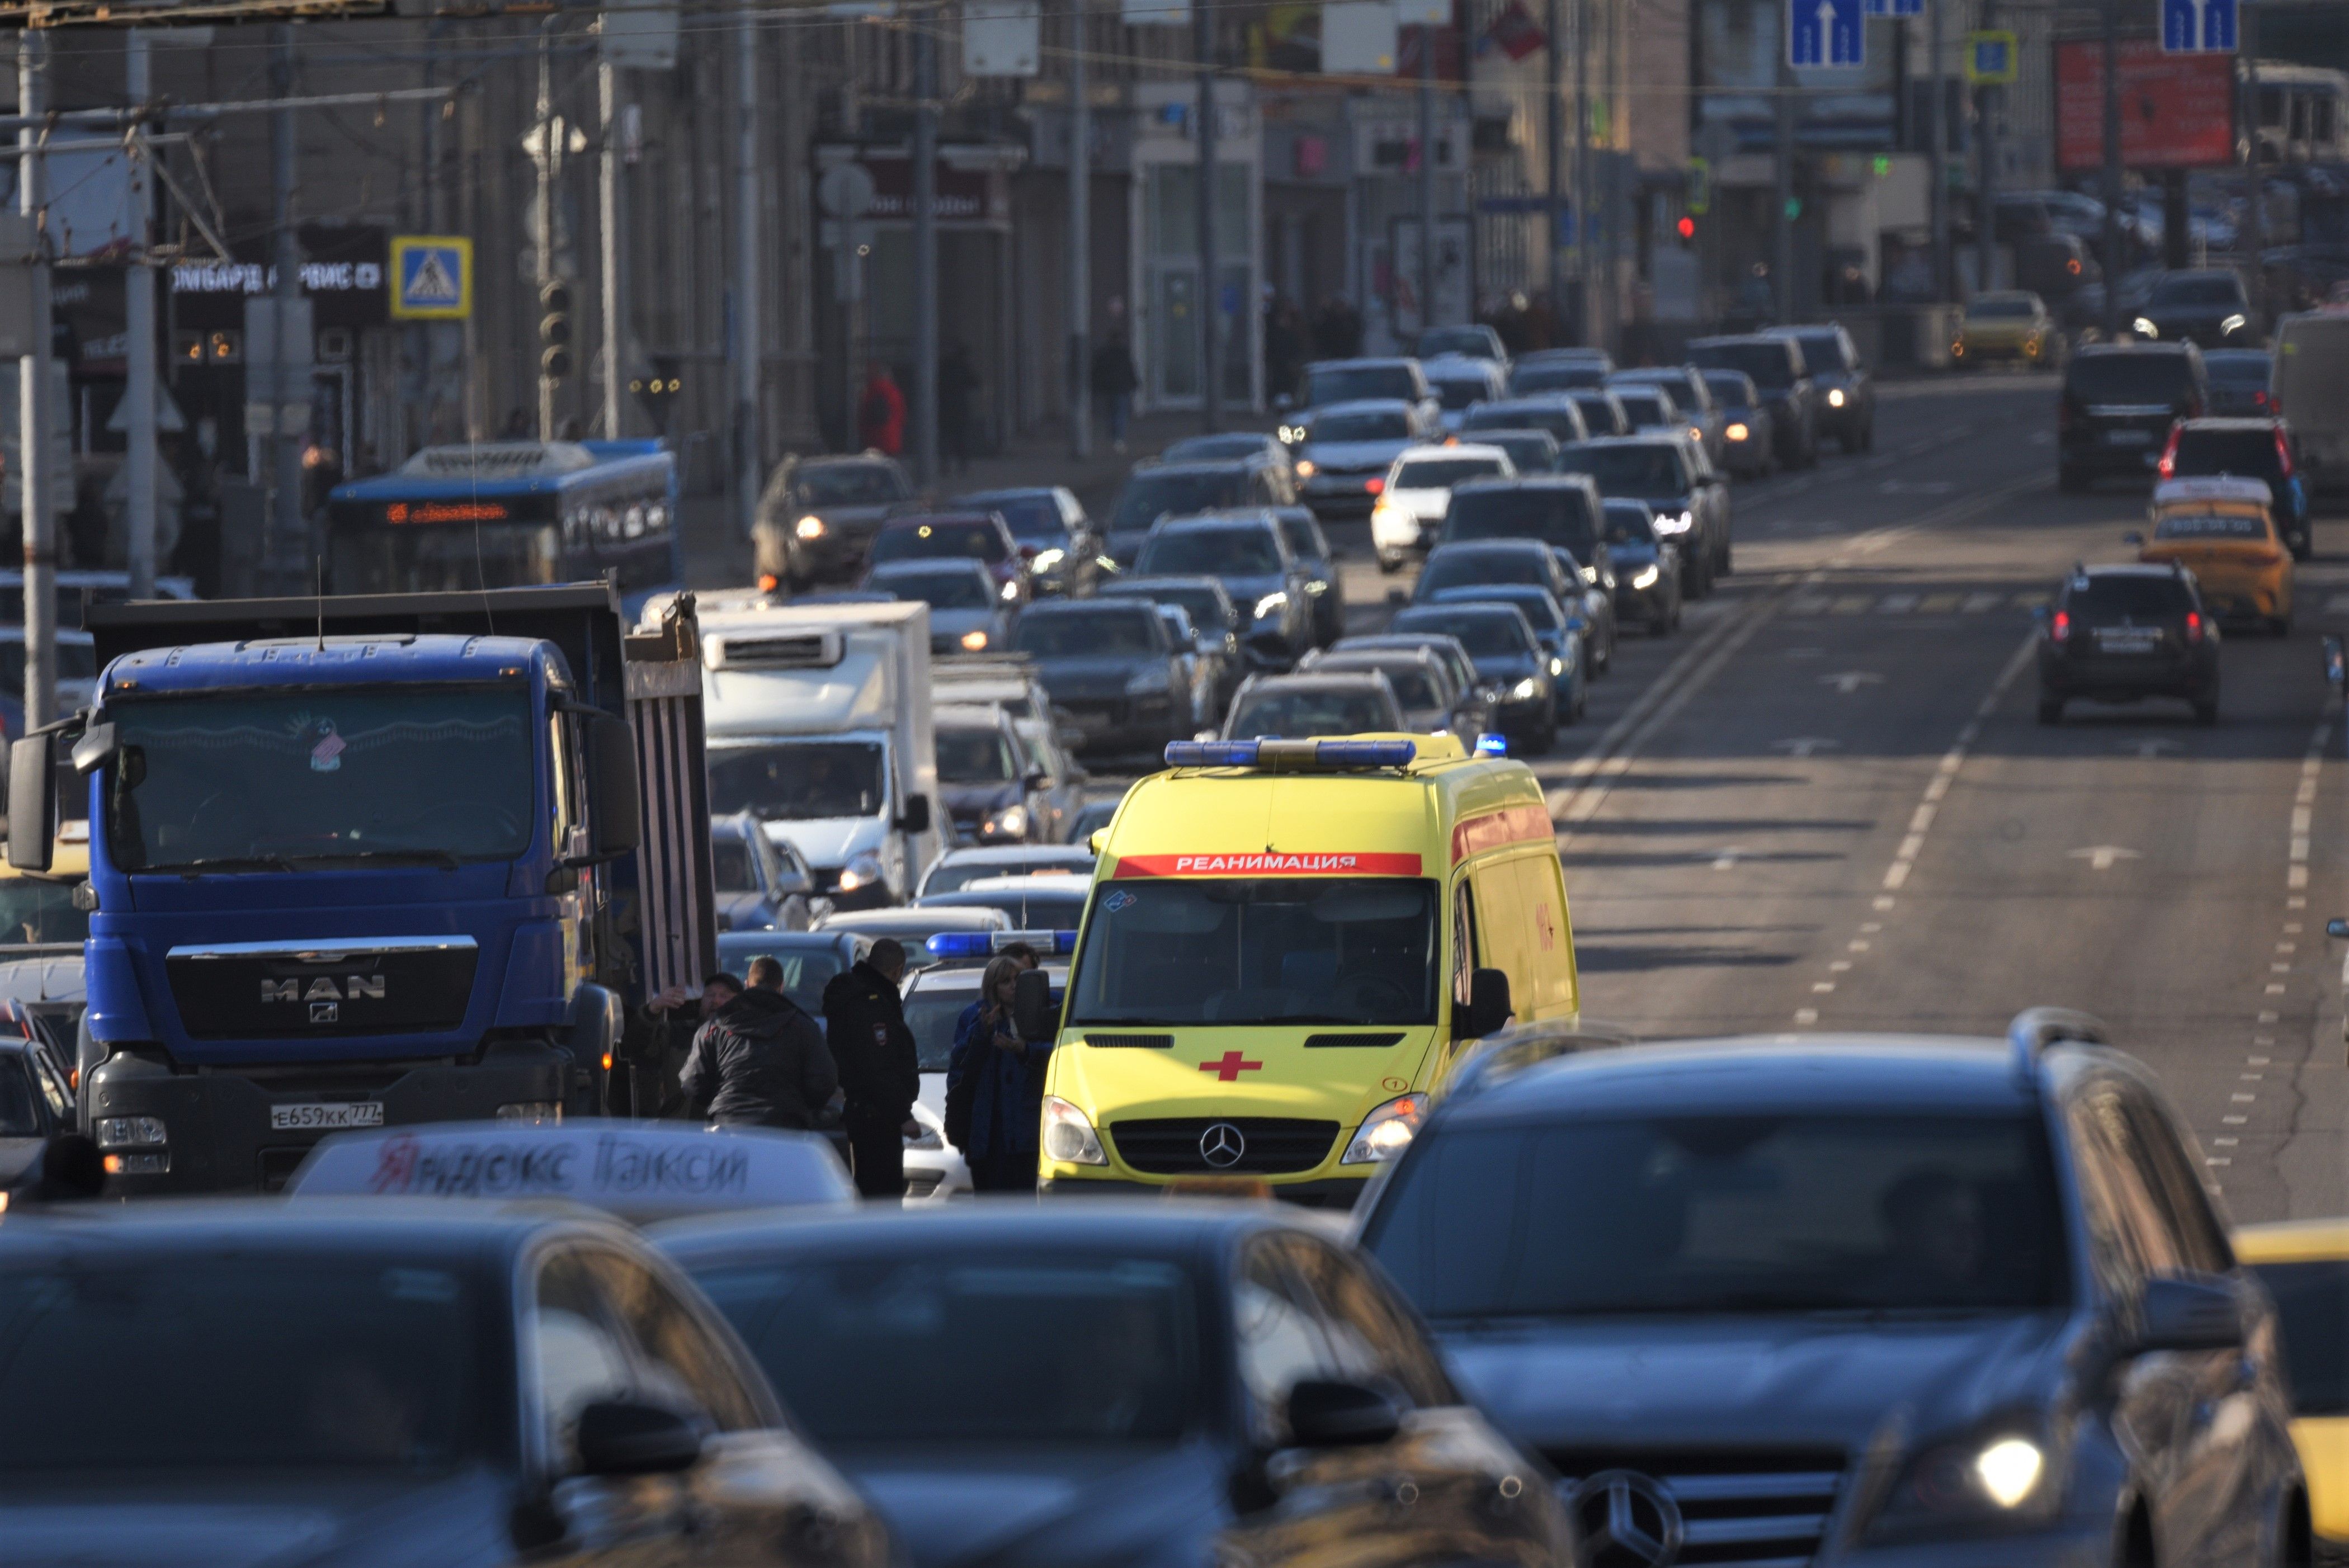 23-летний житель Москвы предстанет перед судом за нарушение правил дорожного движения в состоянии опьянения, повлекшее по неосторожности смерть человека